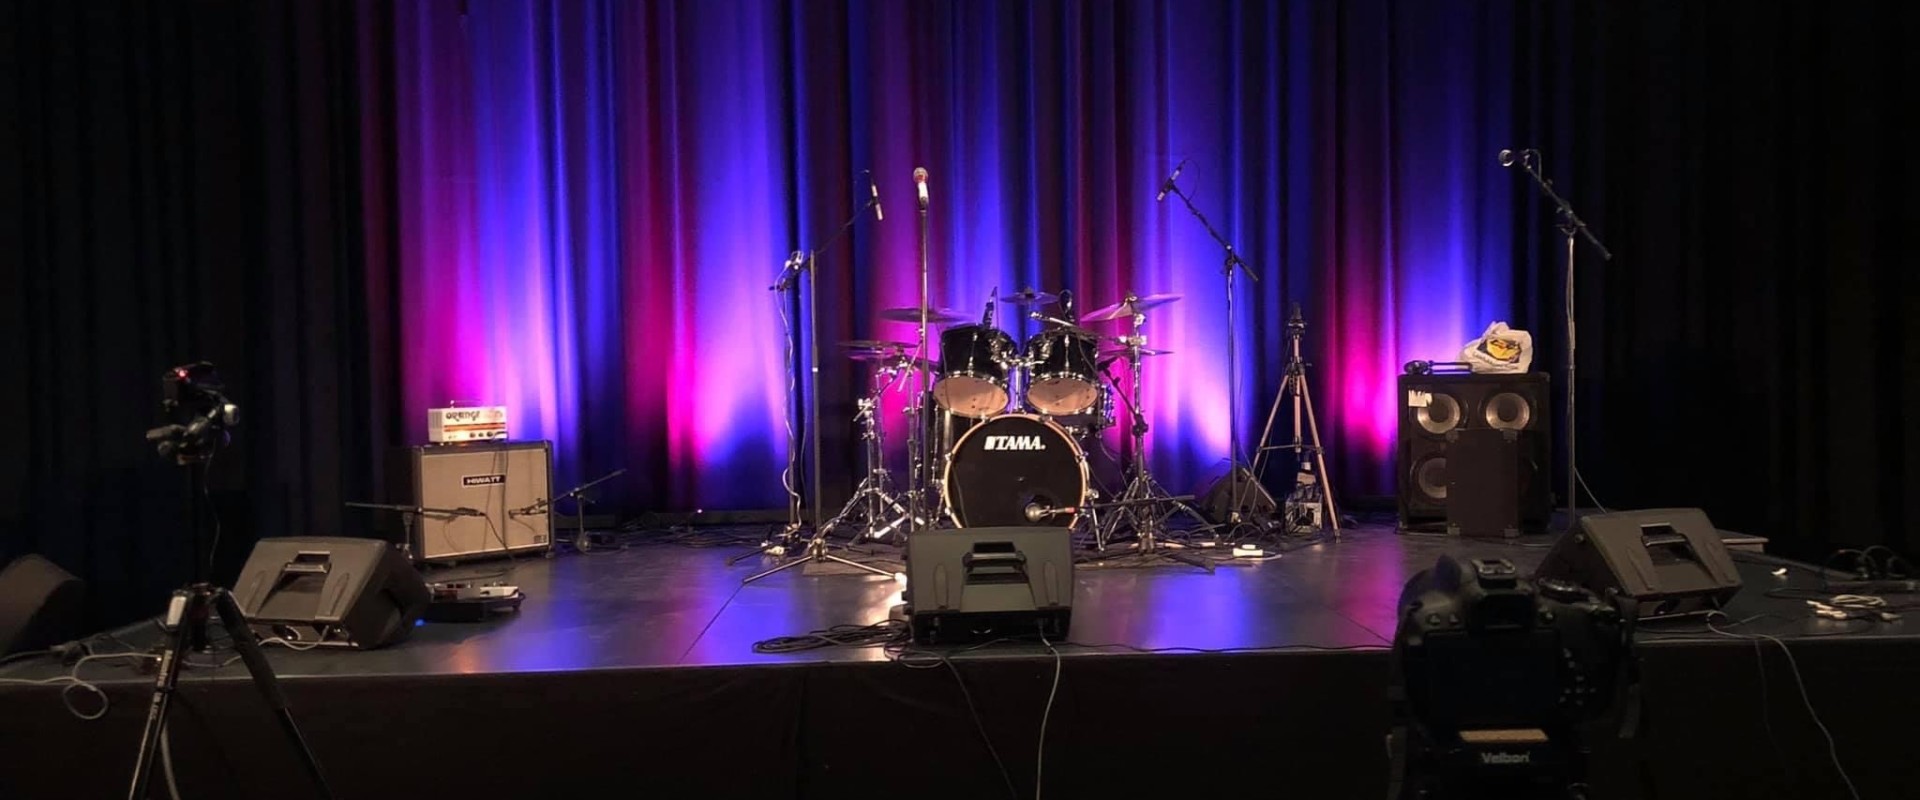 Tyhjä esiintymislava, johon aseteltu rummut, mikrofonit ja monitorit. Lava on valaistu dramaattisesti violetinsinisin sävyin.